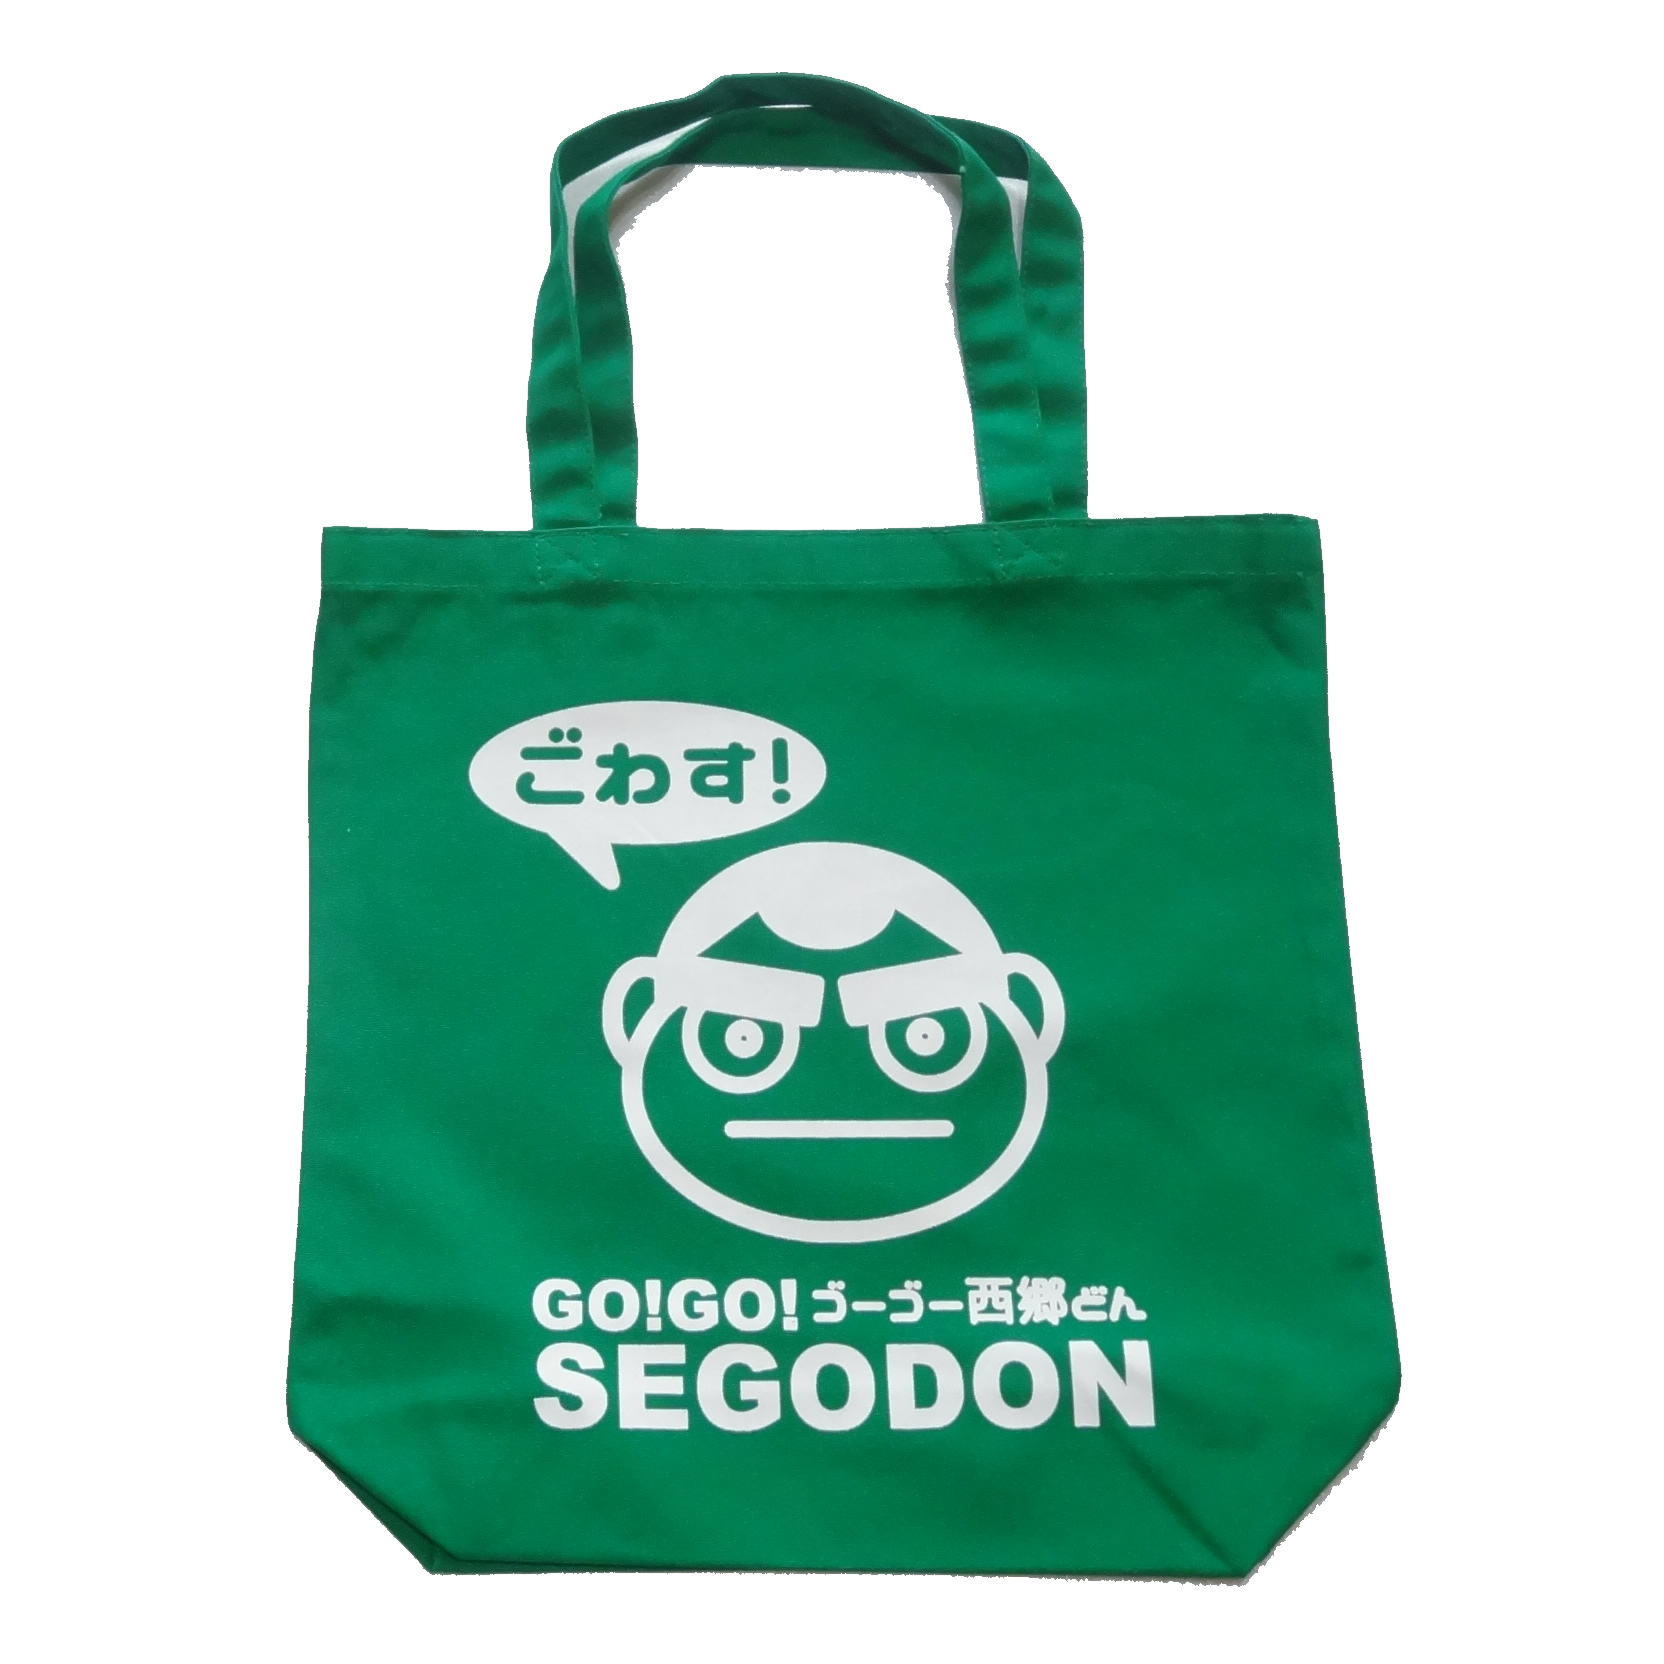 【GO!GO! SEGODON】 エコバッグ (手提げ・トート) かごしま茶濃いめグリーン